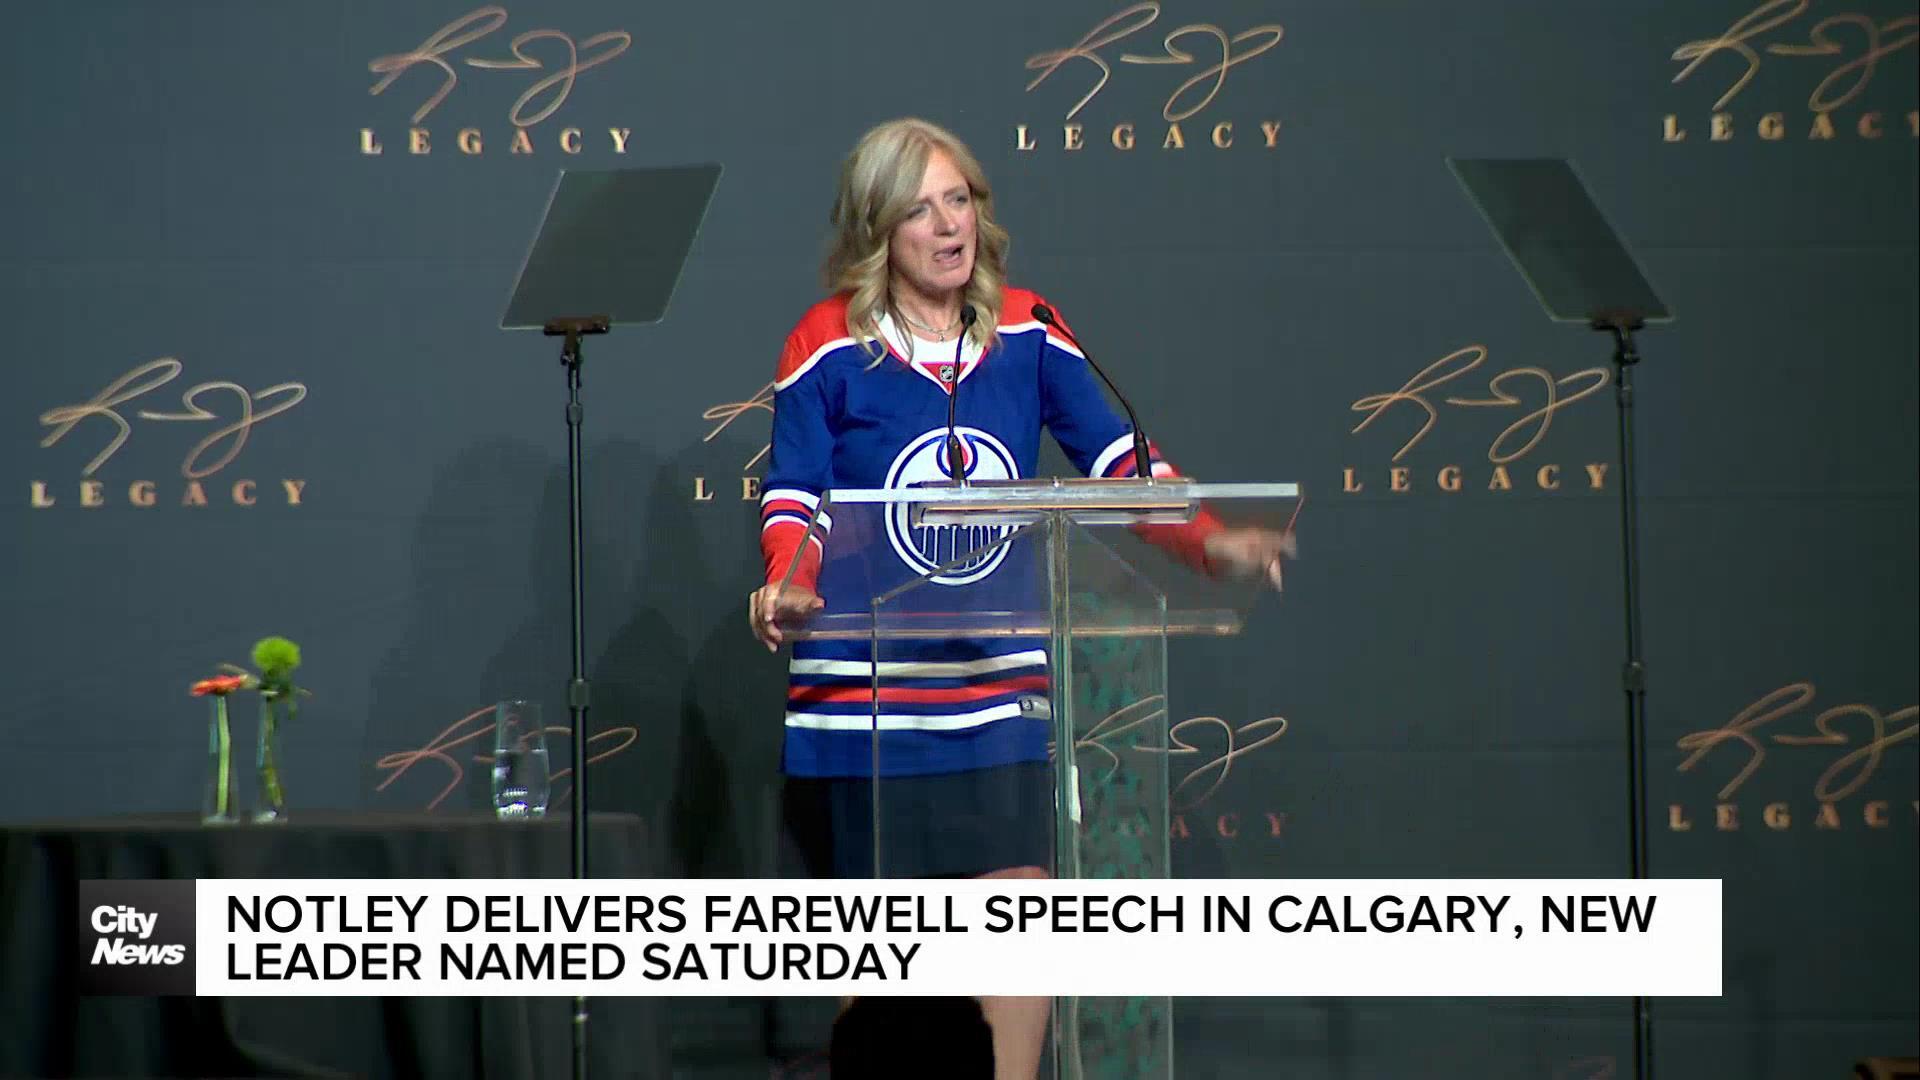 Rachel Notley delivers farewell speech in Calgary